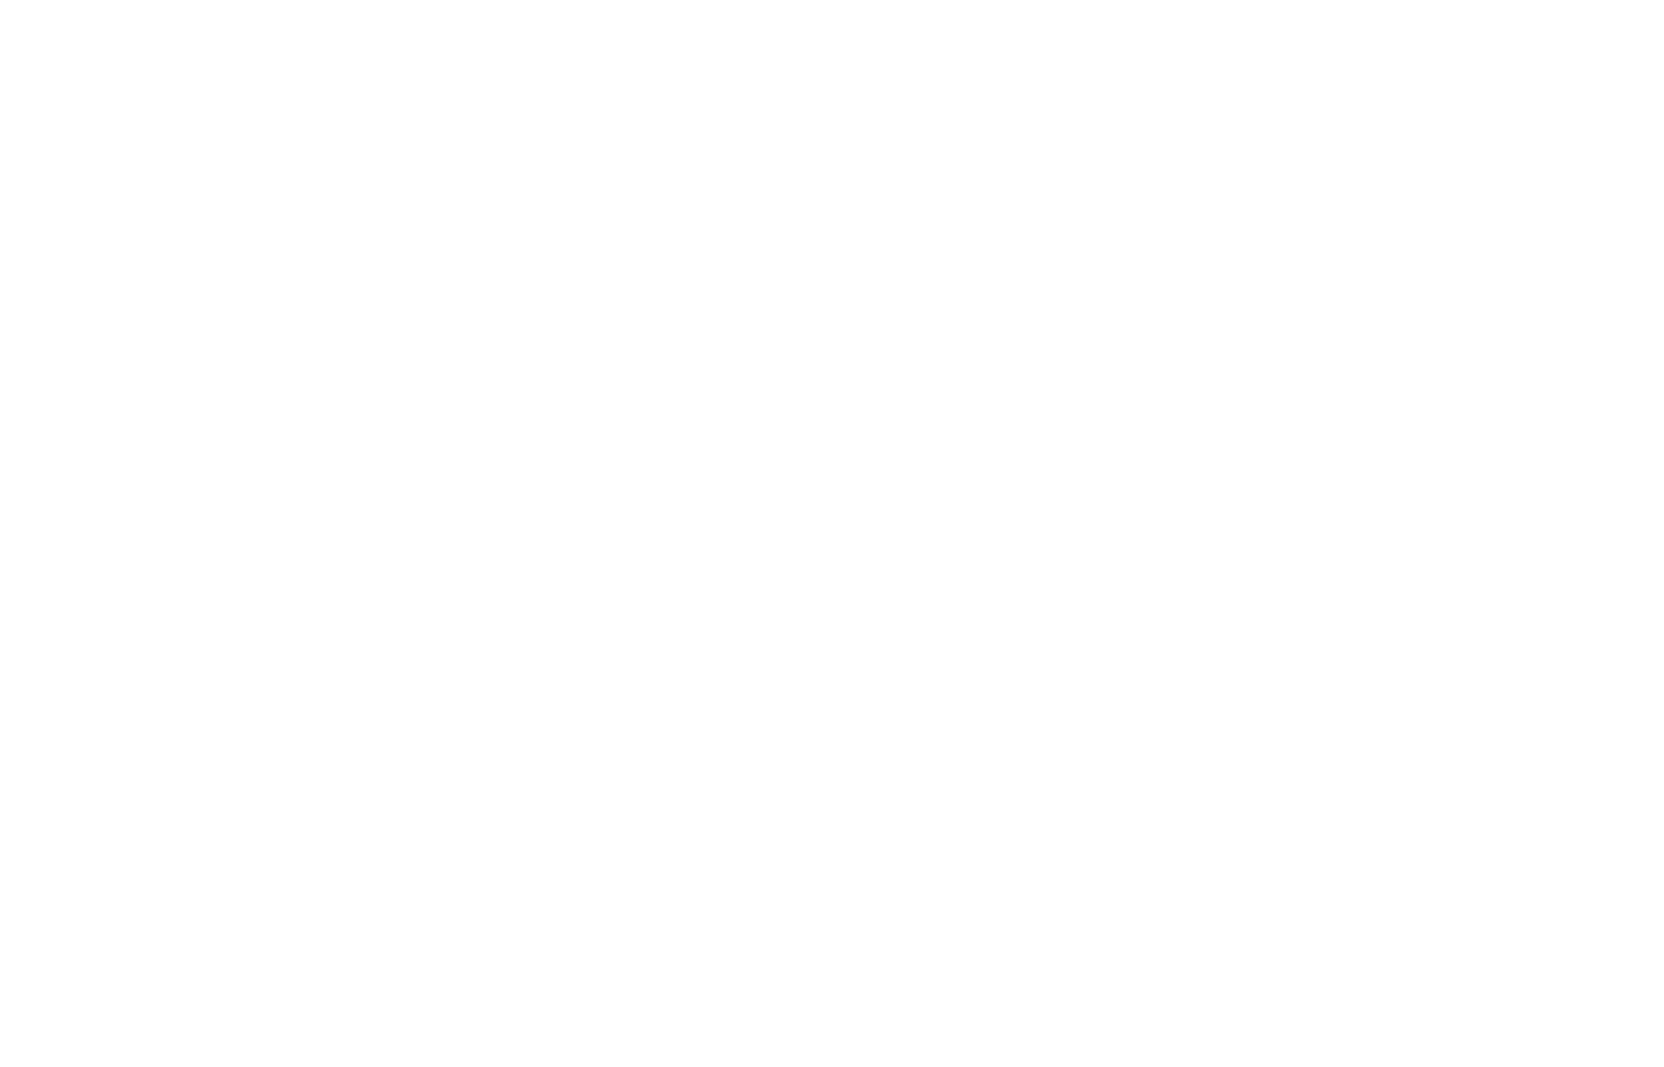 Sneh IVF Center